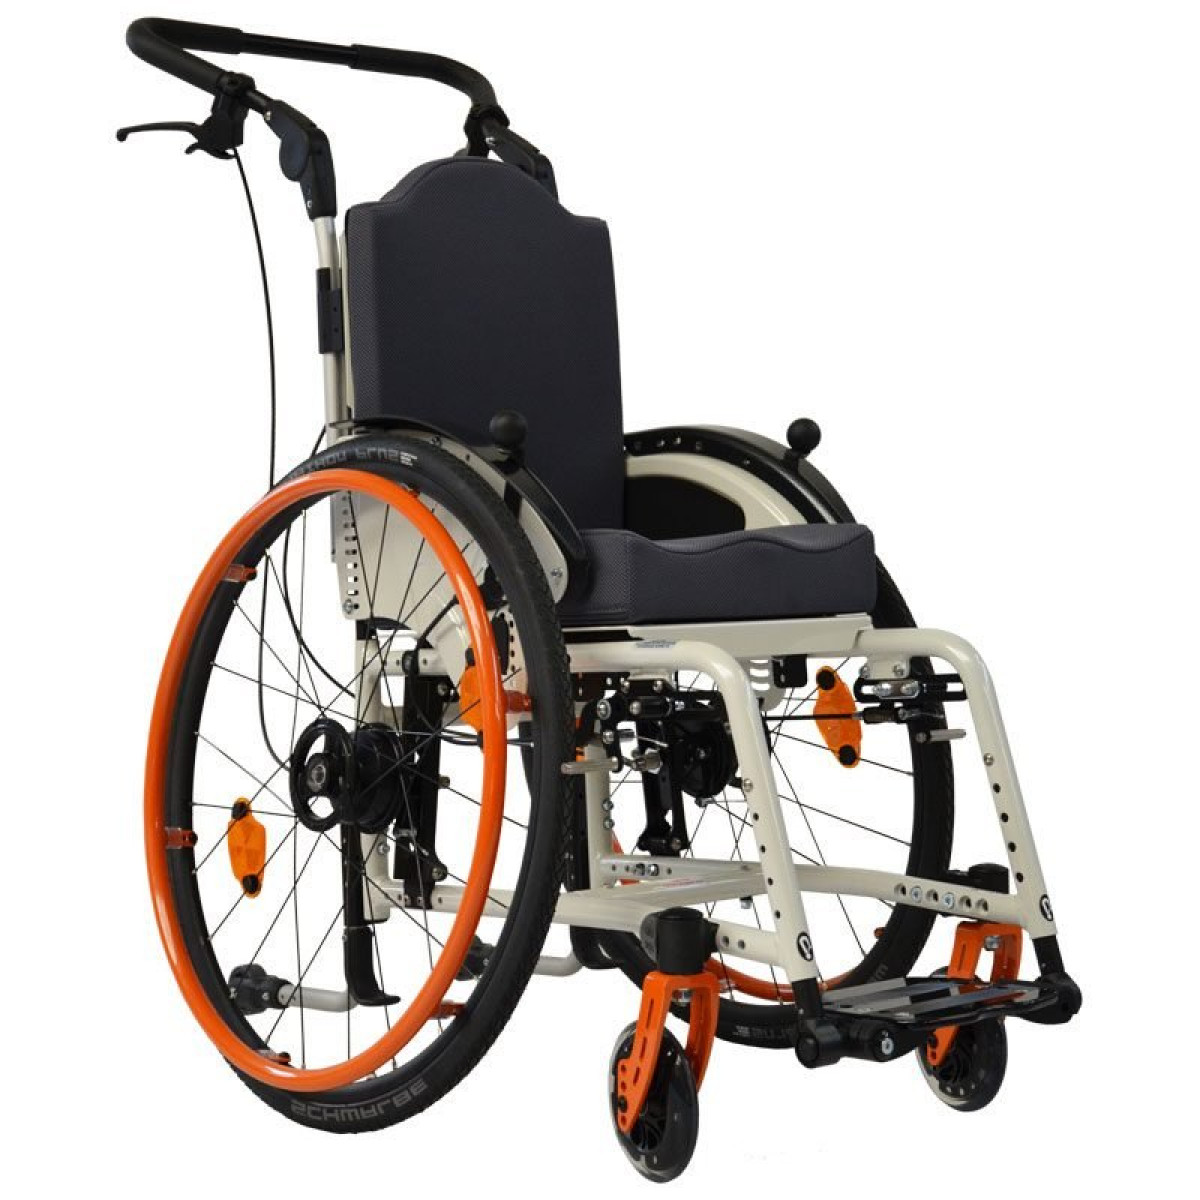 Активная инвалидная коляска купить. Детское кресло-коляска активного типа Sorg. Детское кресло-коляска активного типа Sorg Tilty Vario. Кресло коляска активного типа для детей с ДЦП. Инвалидная коляска активная Арто.